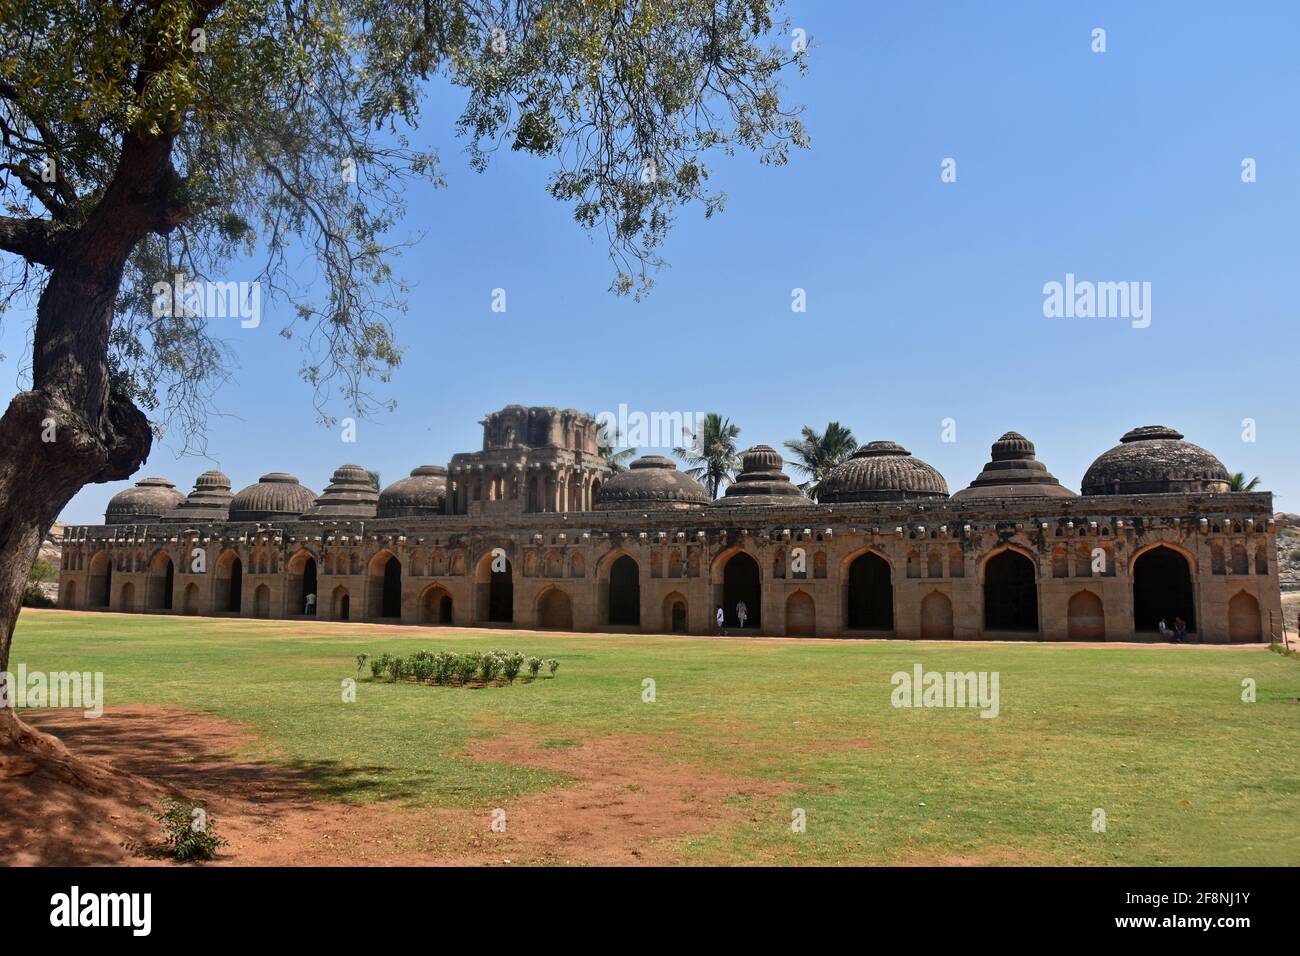 Ruinas antiguas de los establos de elefantes reales en Hampi del siglo 14th reino de Vijayanagara la antigua ciudad de Vijayanagara, Hampi, Karnataka, India Foto de stock